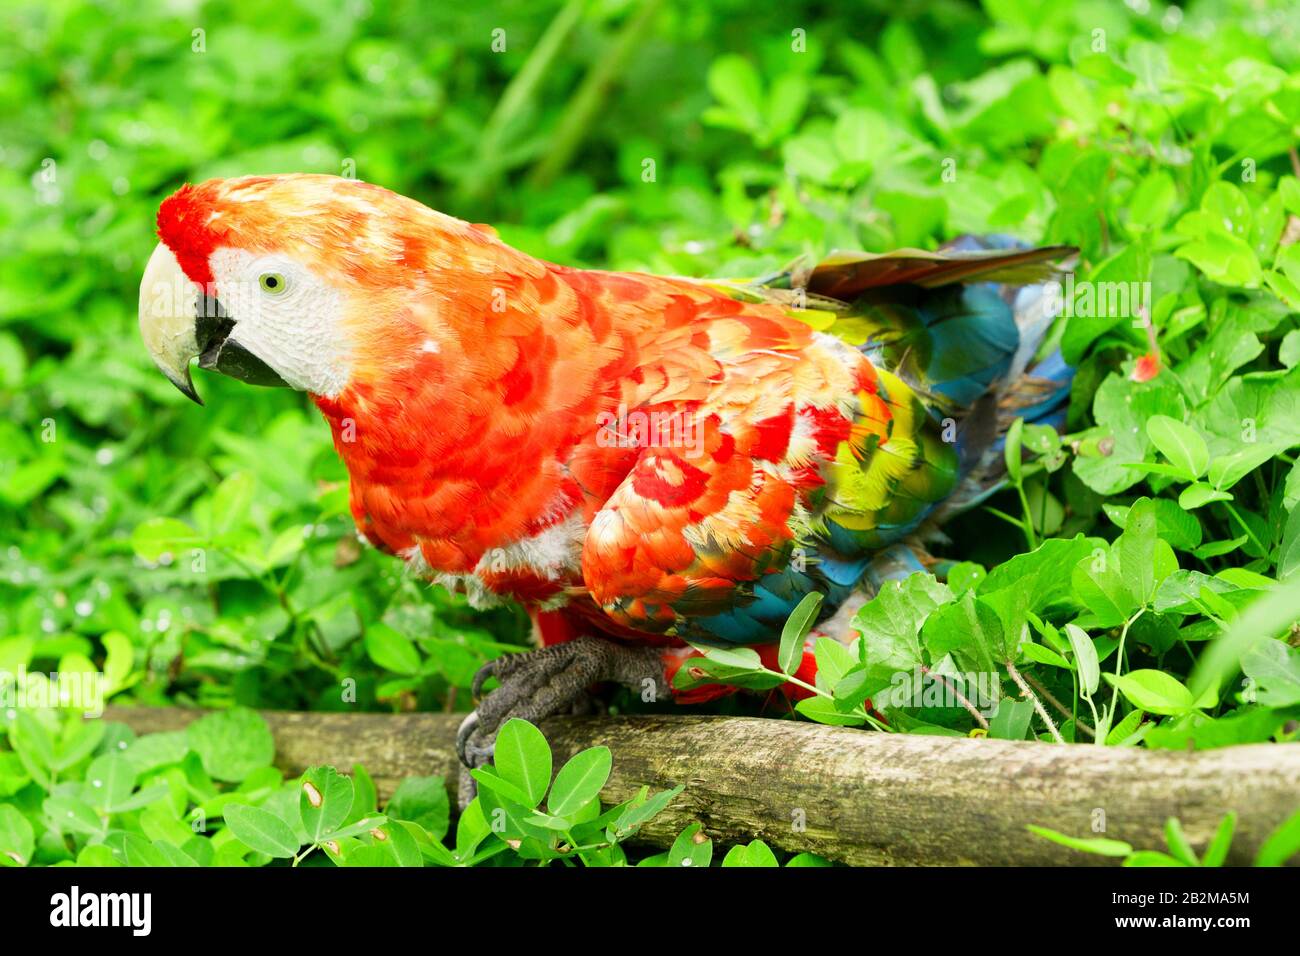 Le Scarlet Macaw Est Un Grand Macaw Coloré Il Est Autochtone À Humide Evergreen Forêts Dans L'Aire De Tropics Américaine S'Étend De L'Extrême Sud-Est M Banque D'Images